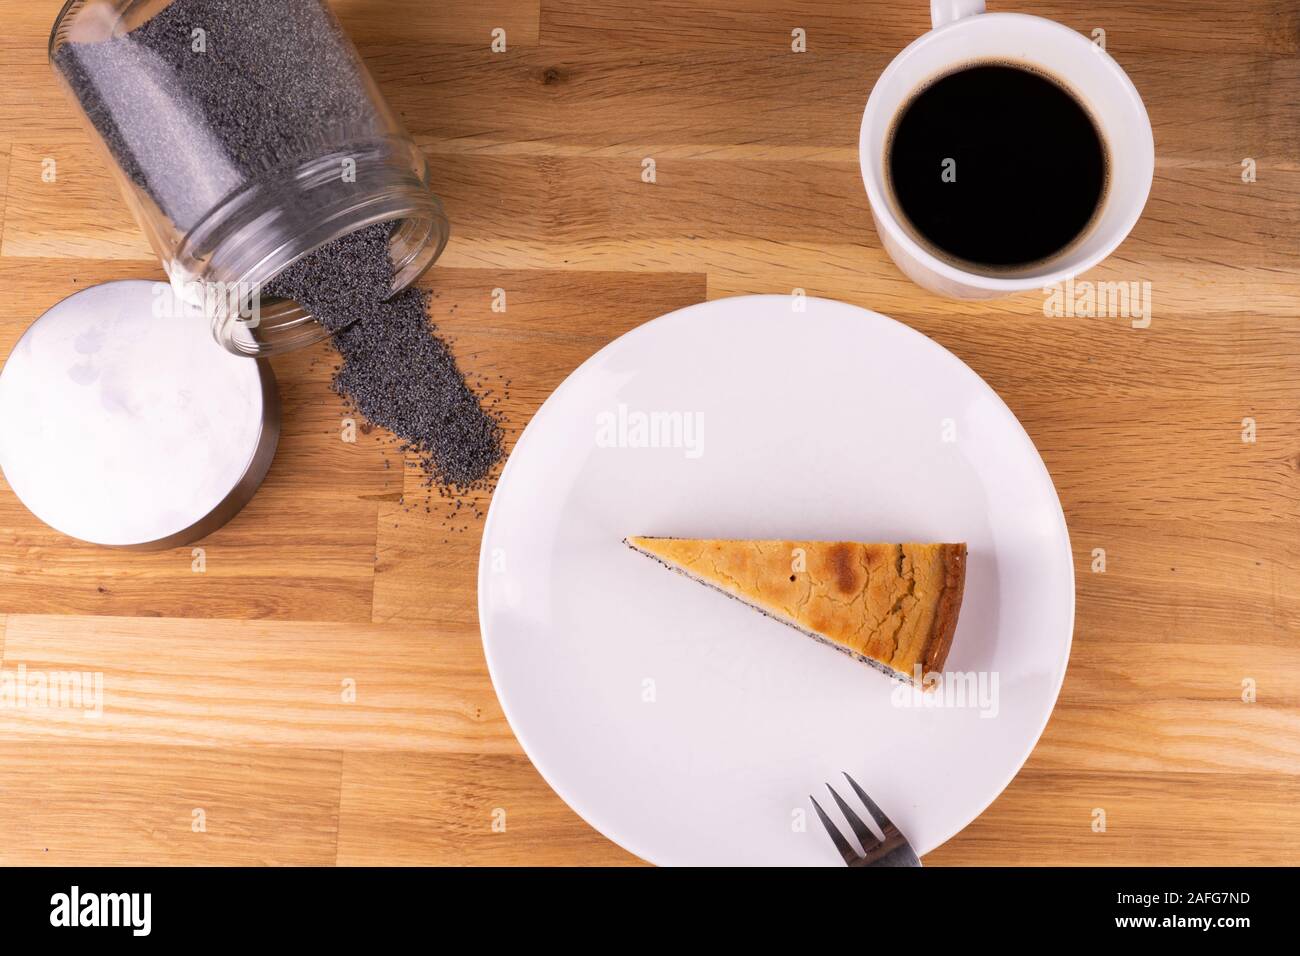 Un morceau de gâteau au fromage vegan aux graines de pavot avec une fourchette, une tasse de café et les graines de pavot sur une table en bois - télévision lay Banque D'Images